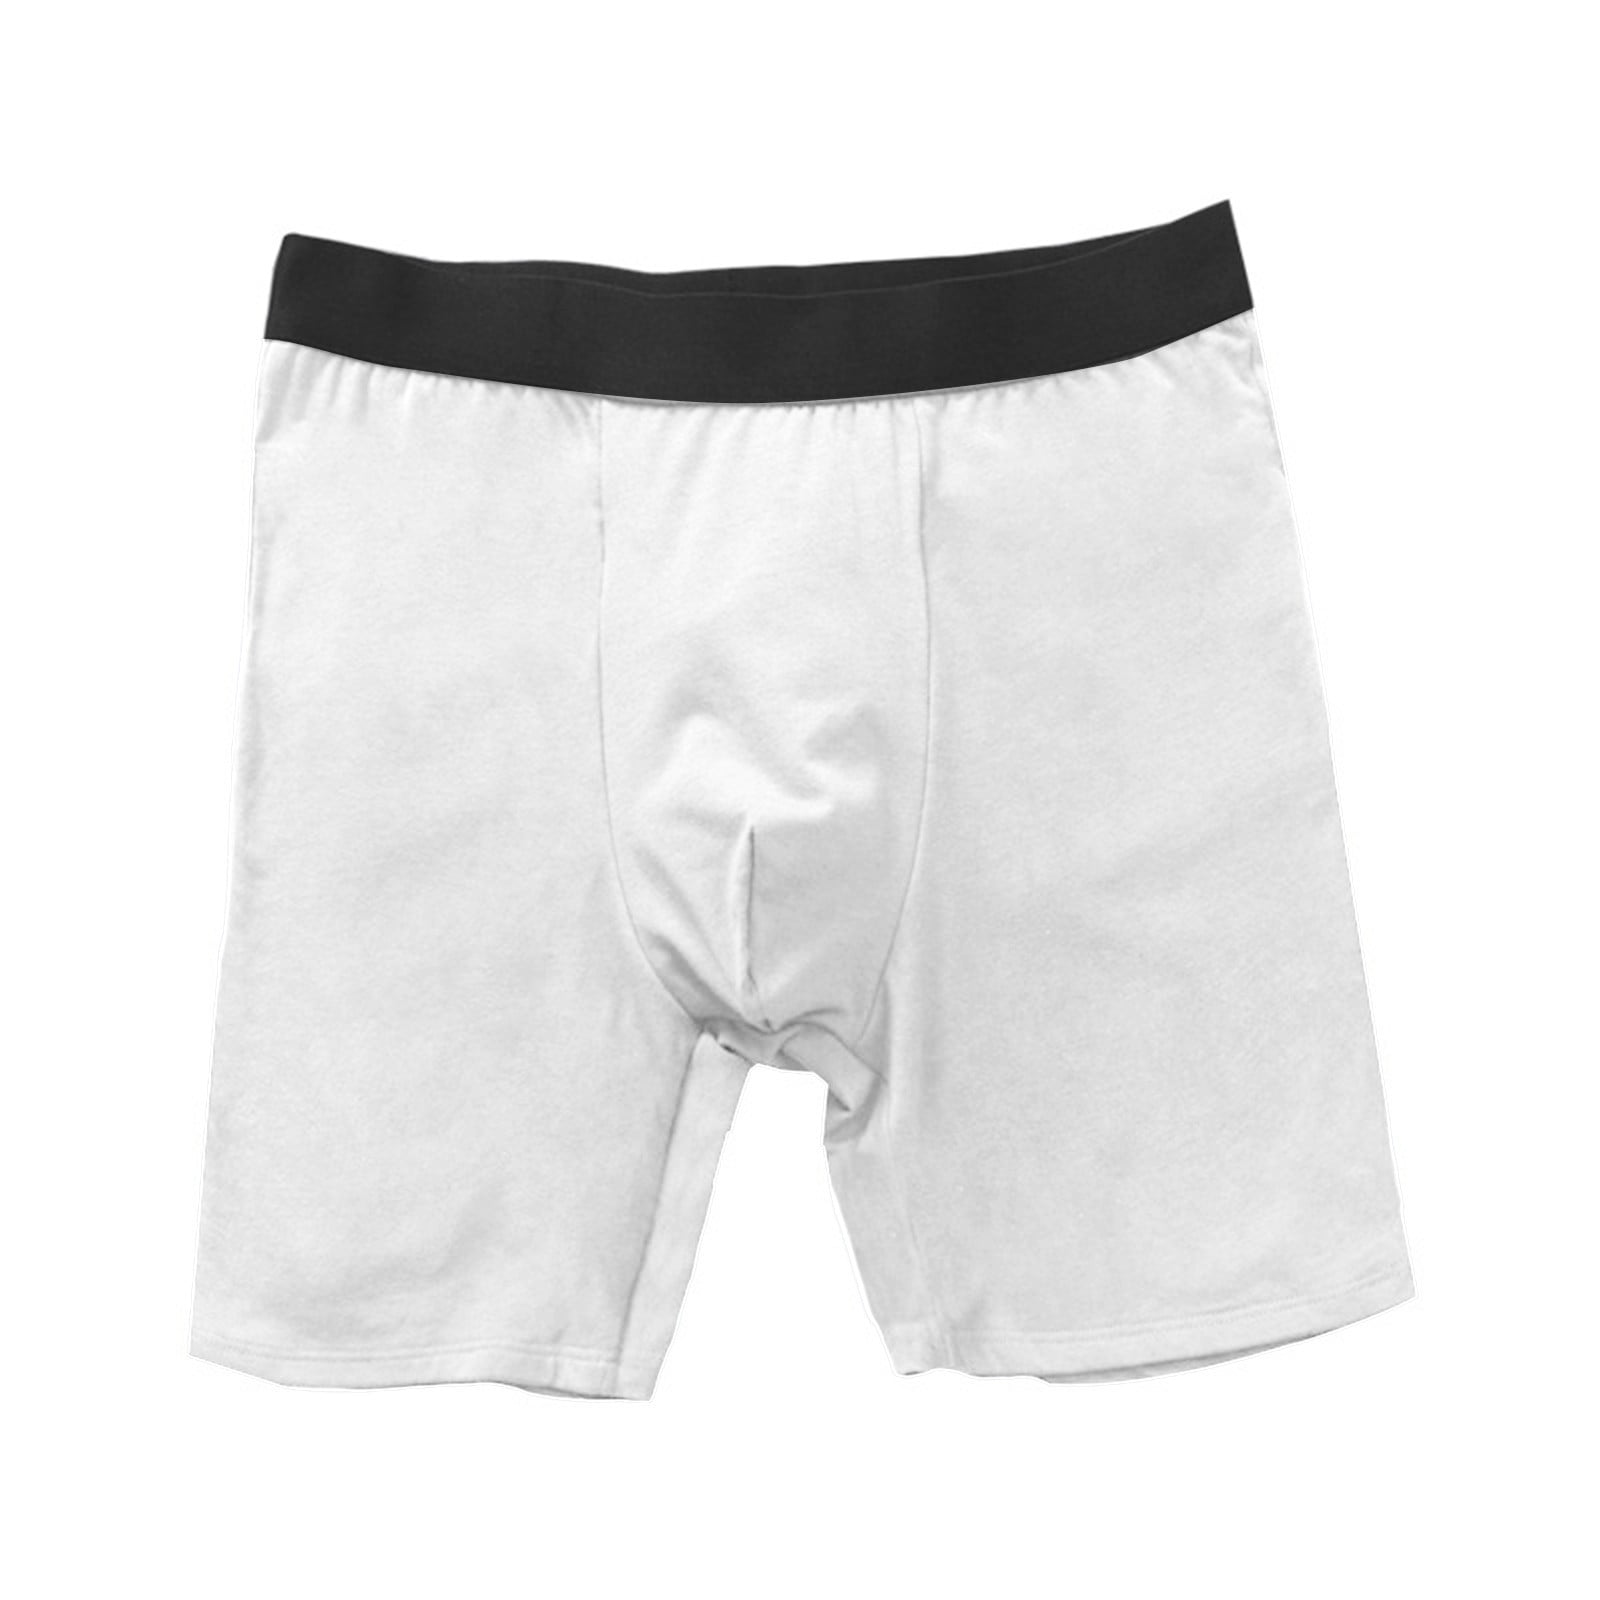 CBGELRT Mens Underwear High Waisted Cotton Boxer Long Leg Sport Shorts ...